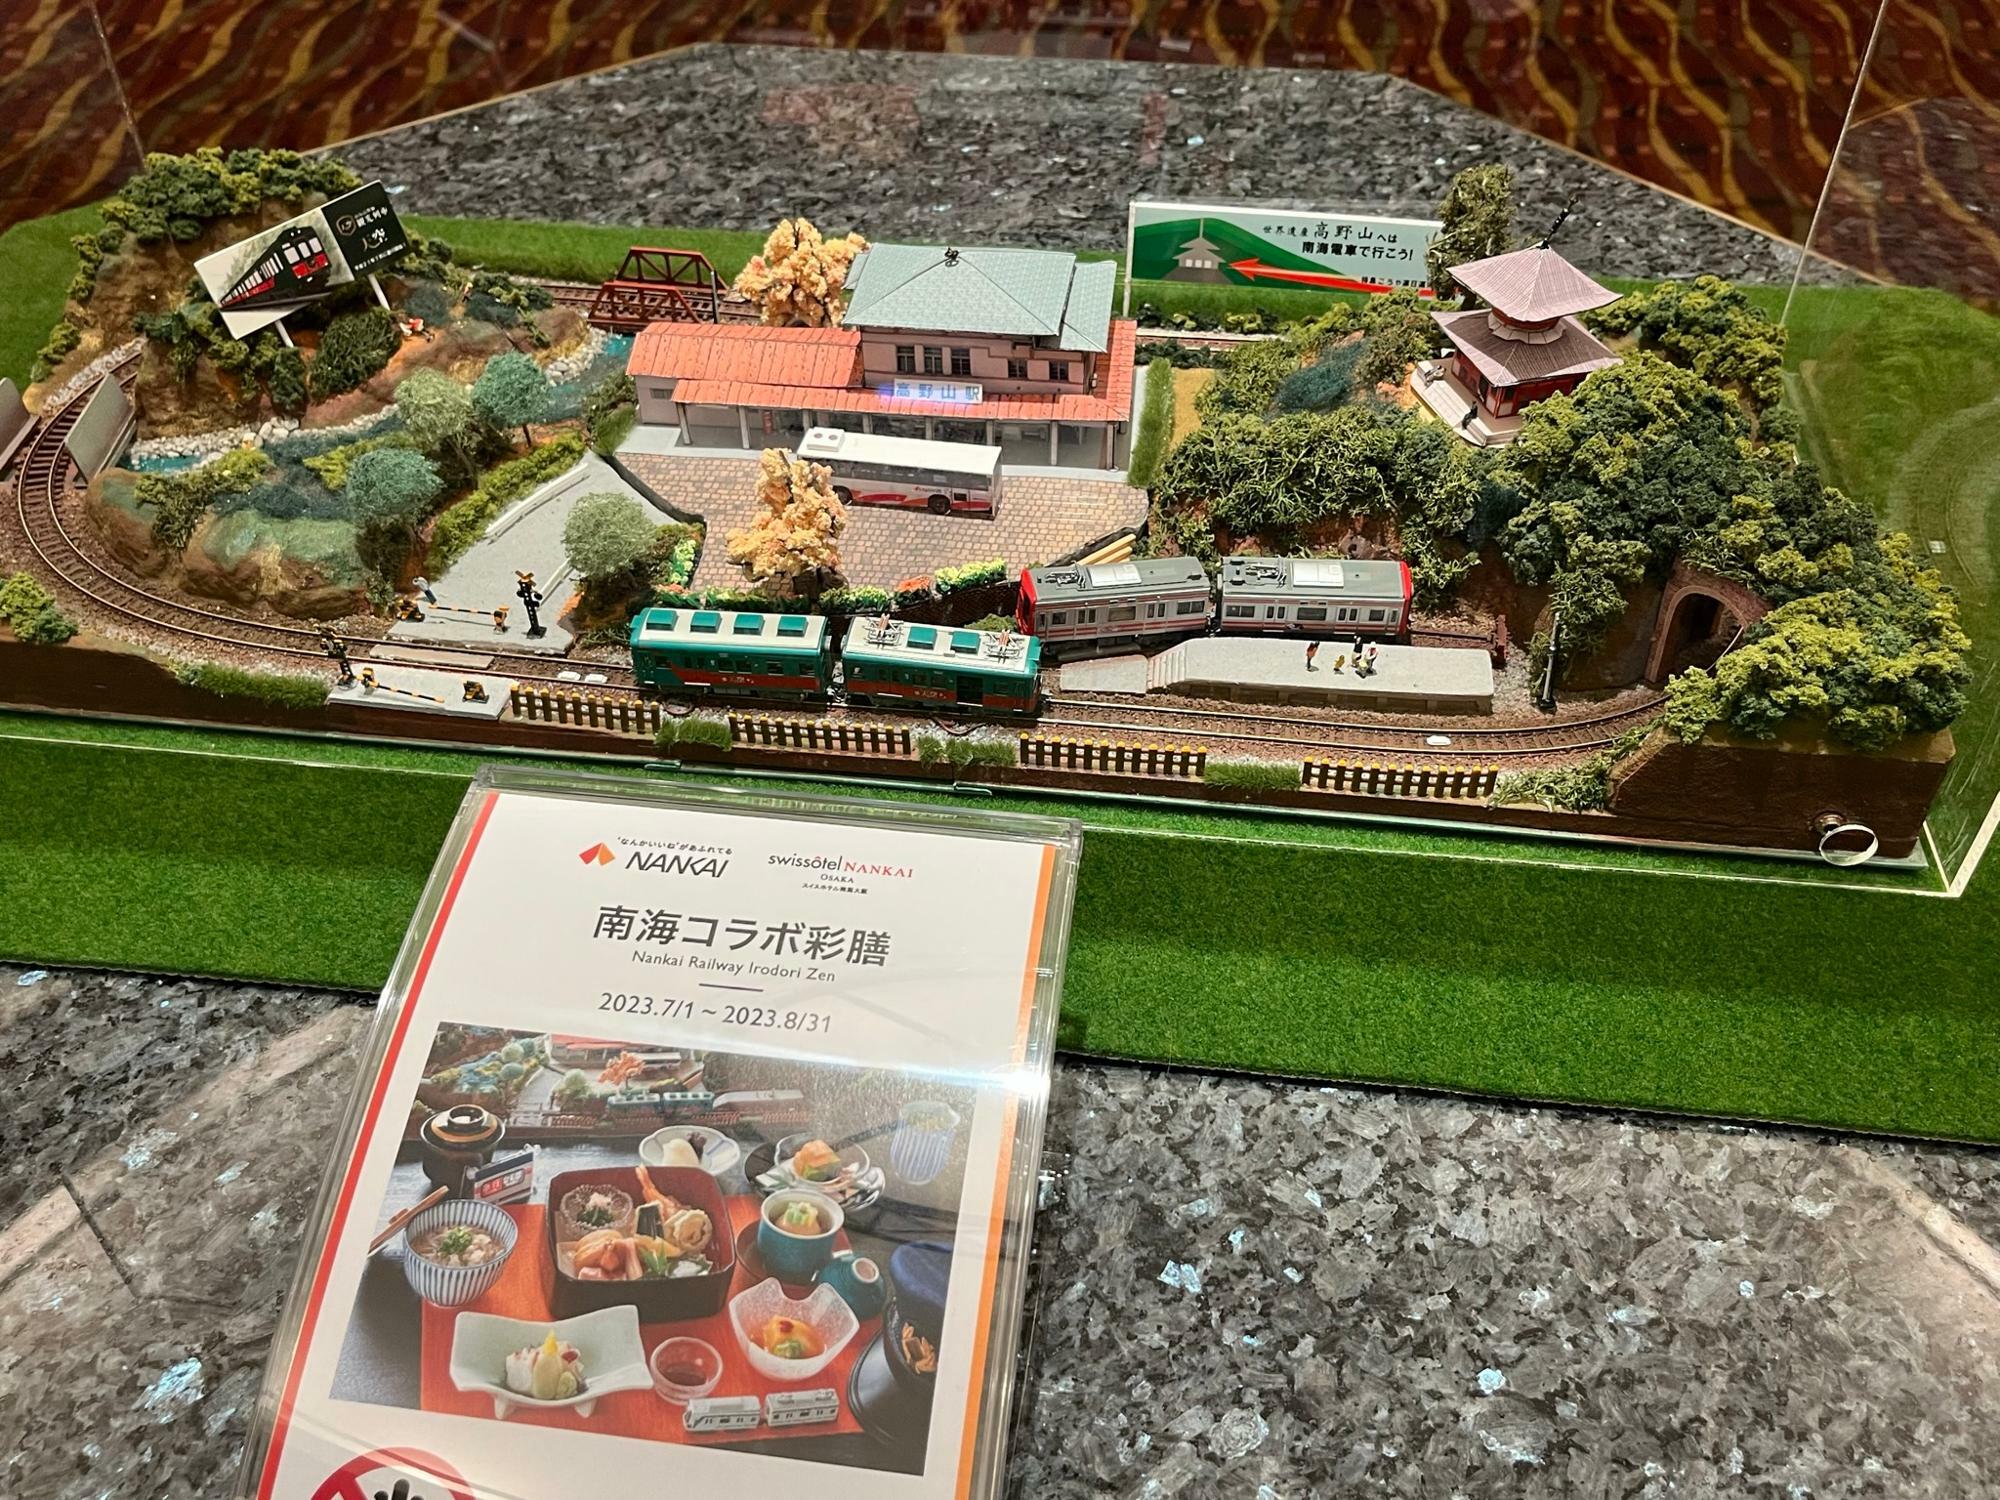 スイスホテル南海大阪10階にある鉄道模型